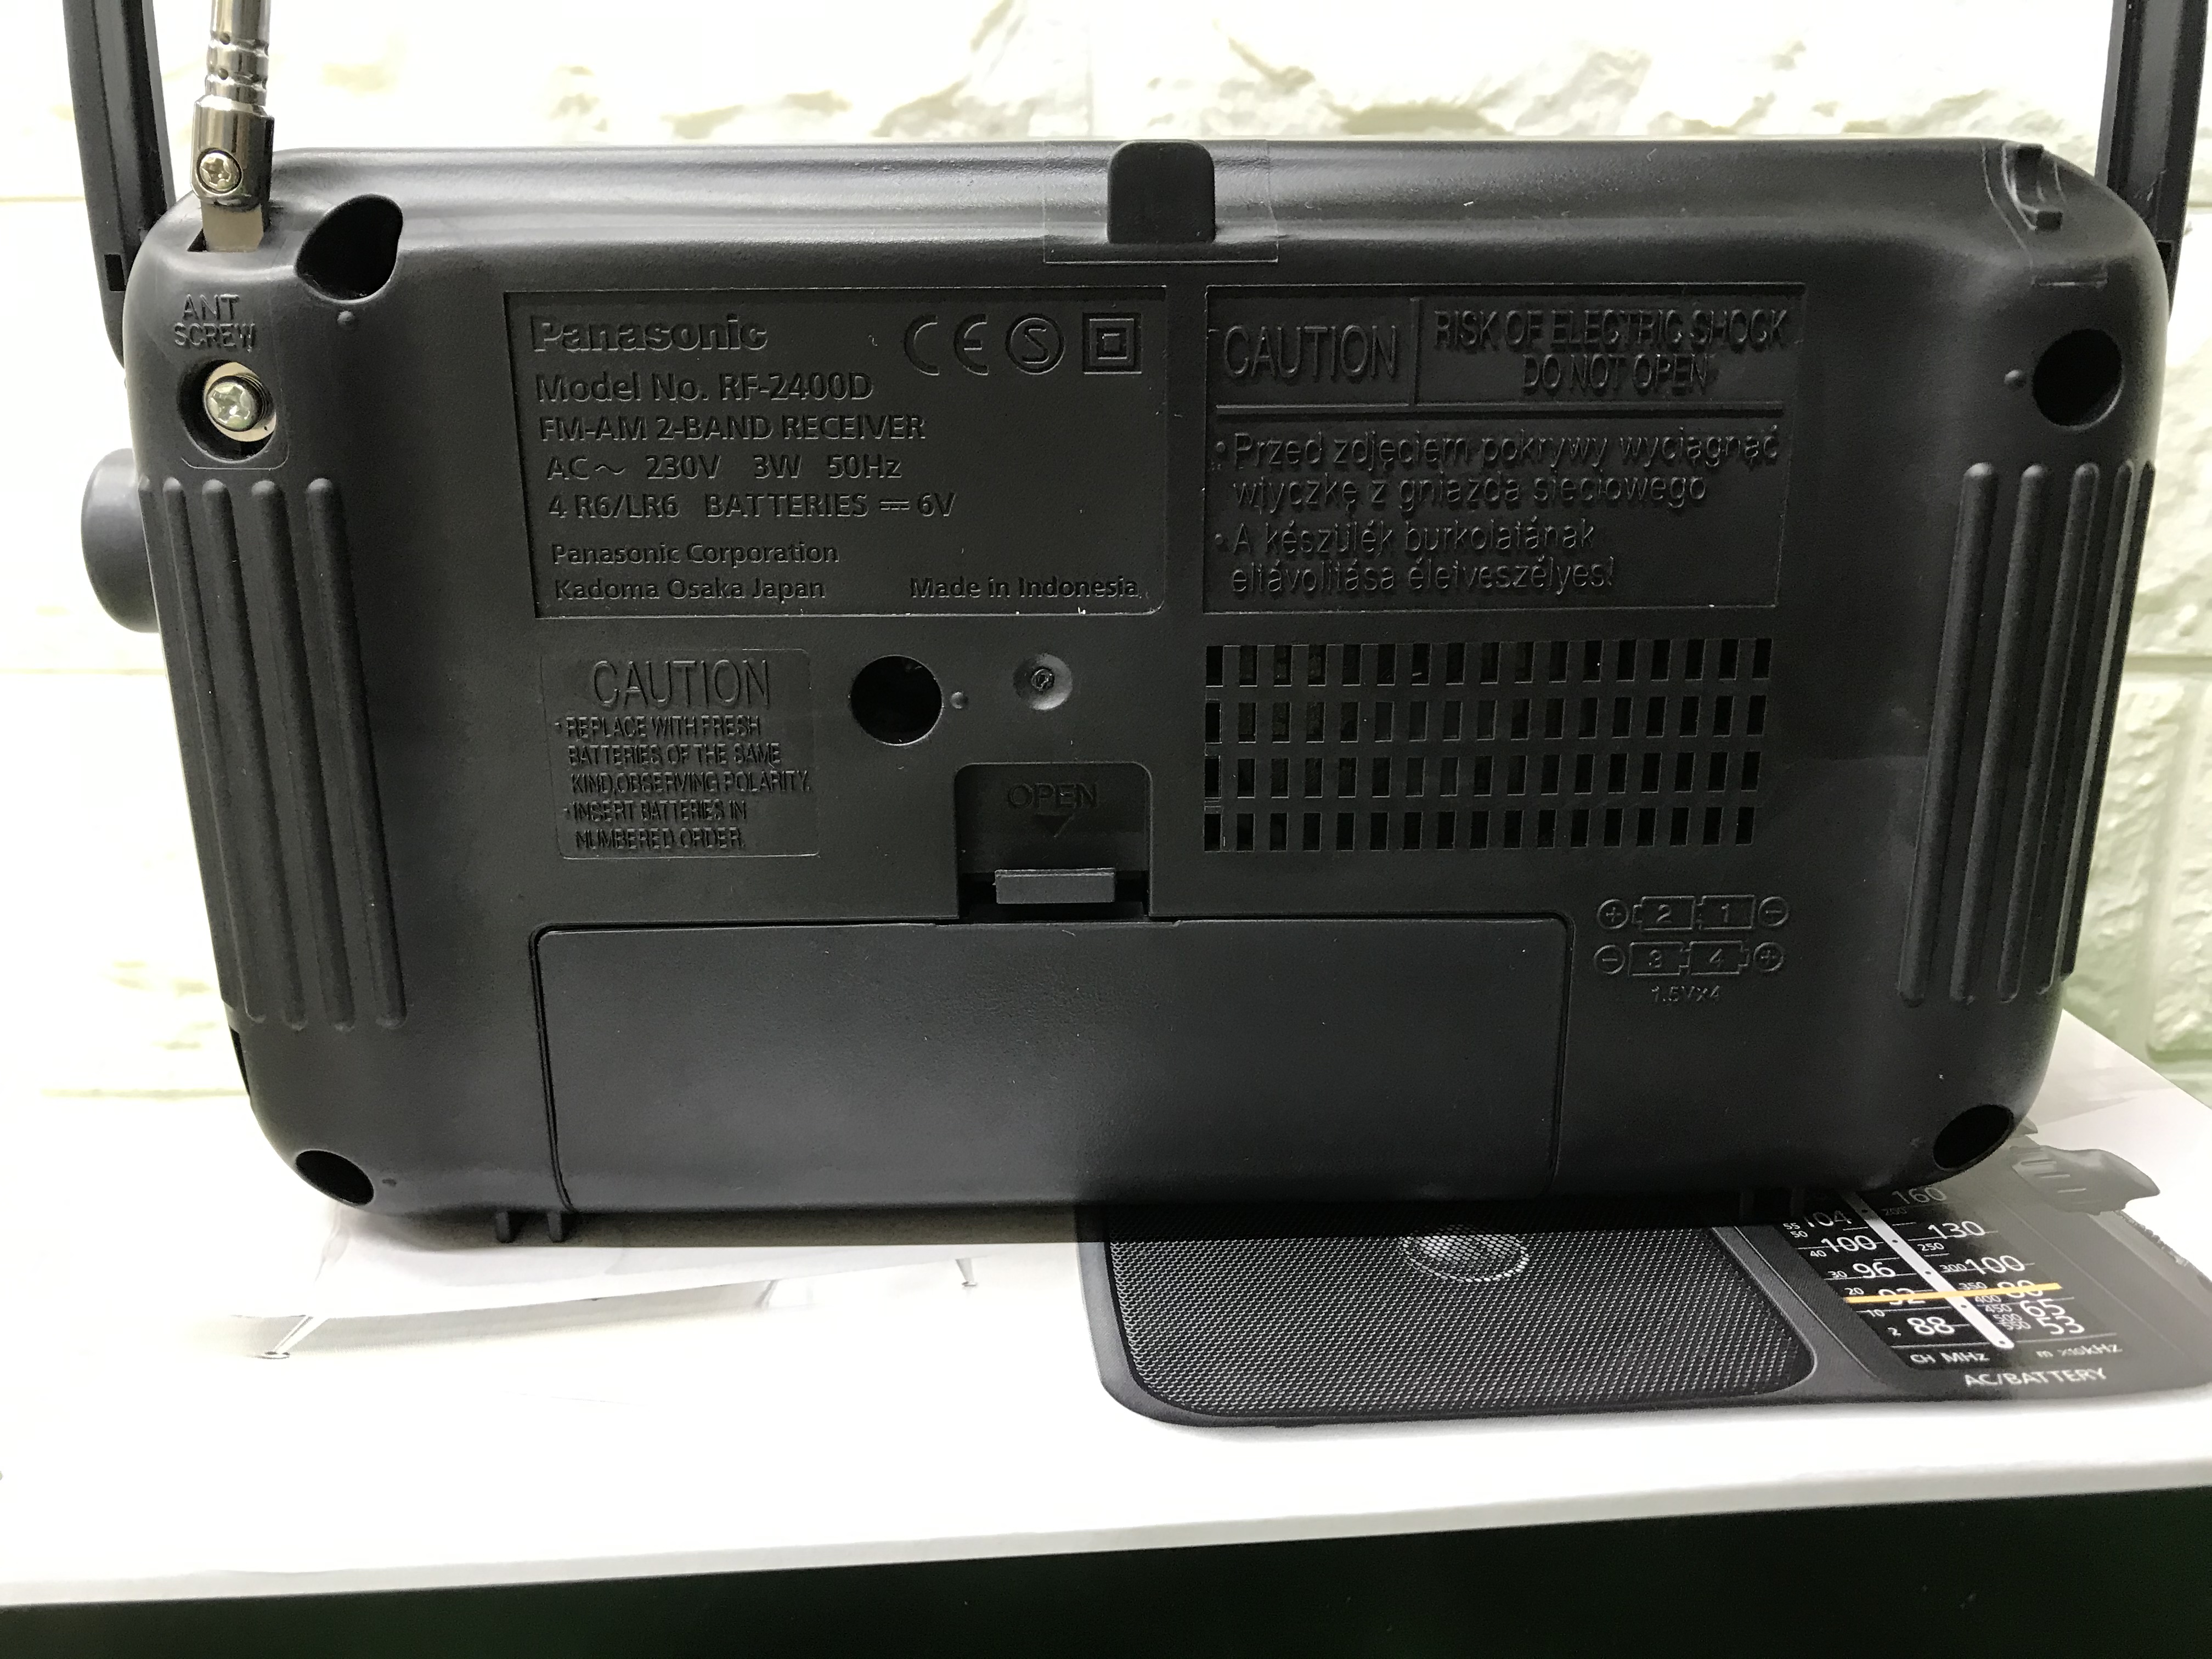 Radio Panasonic RF-2400D chính hãng giá tốt